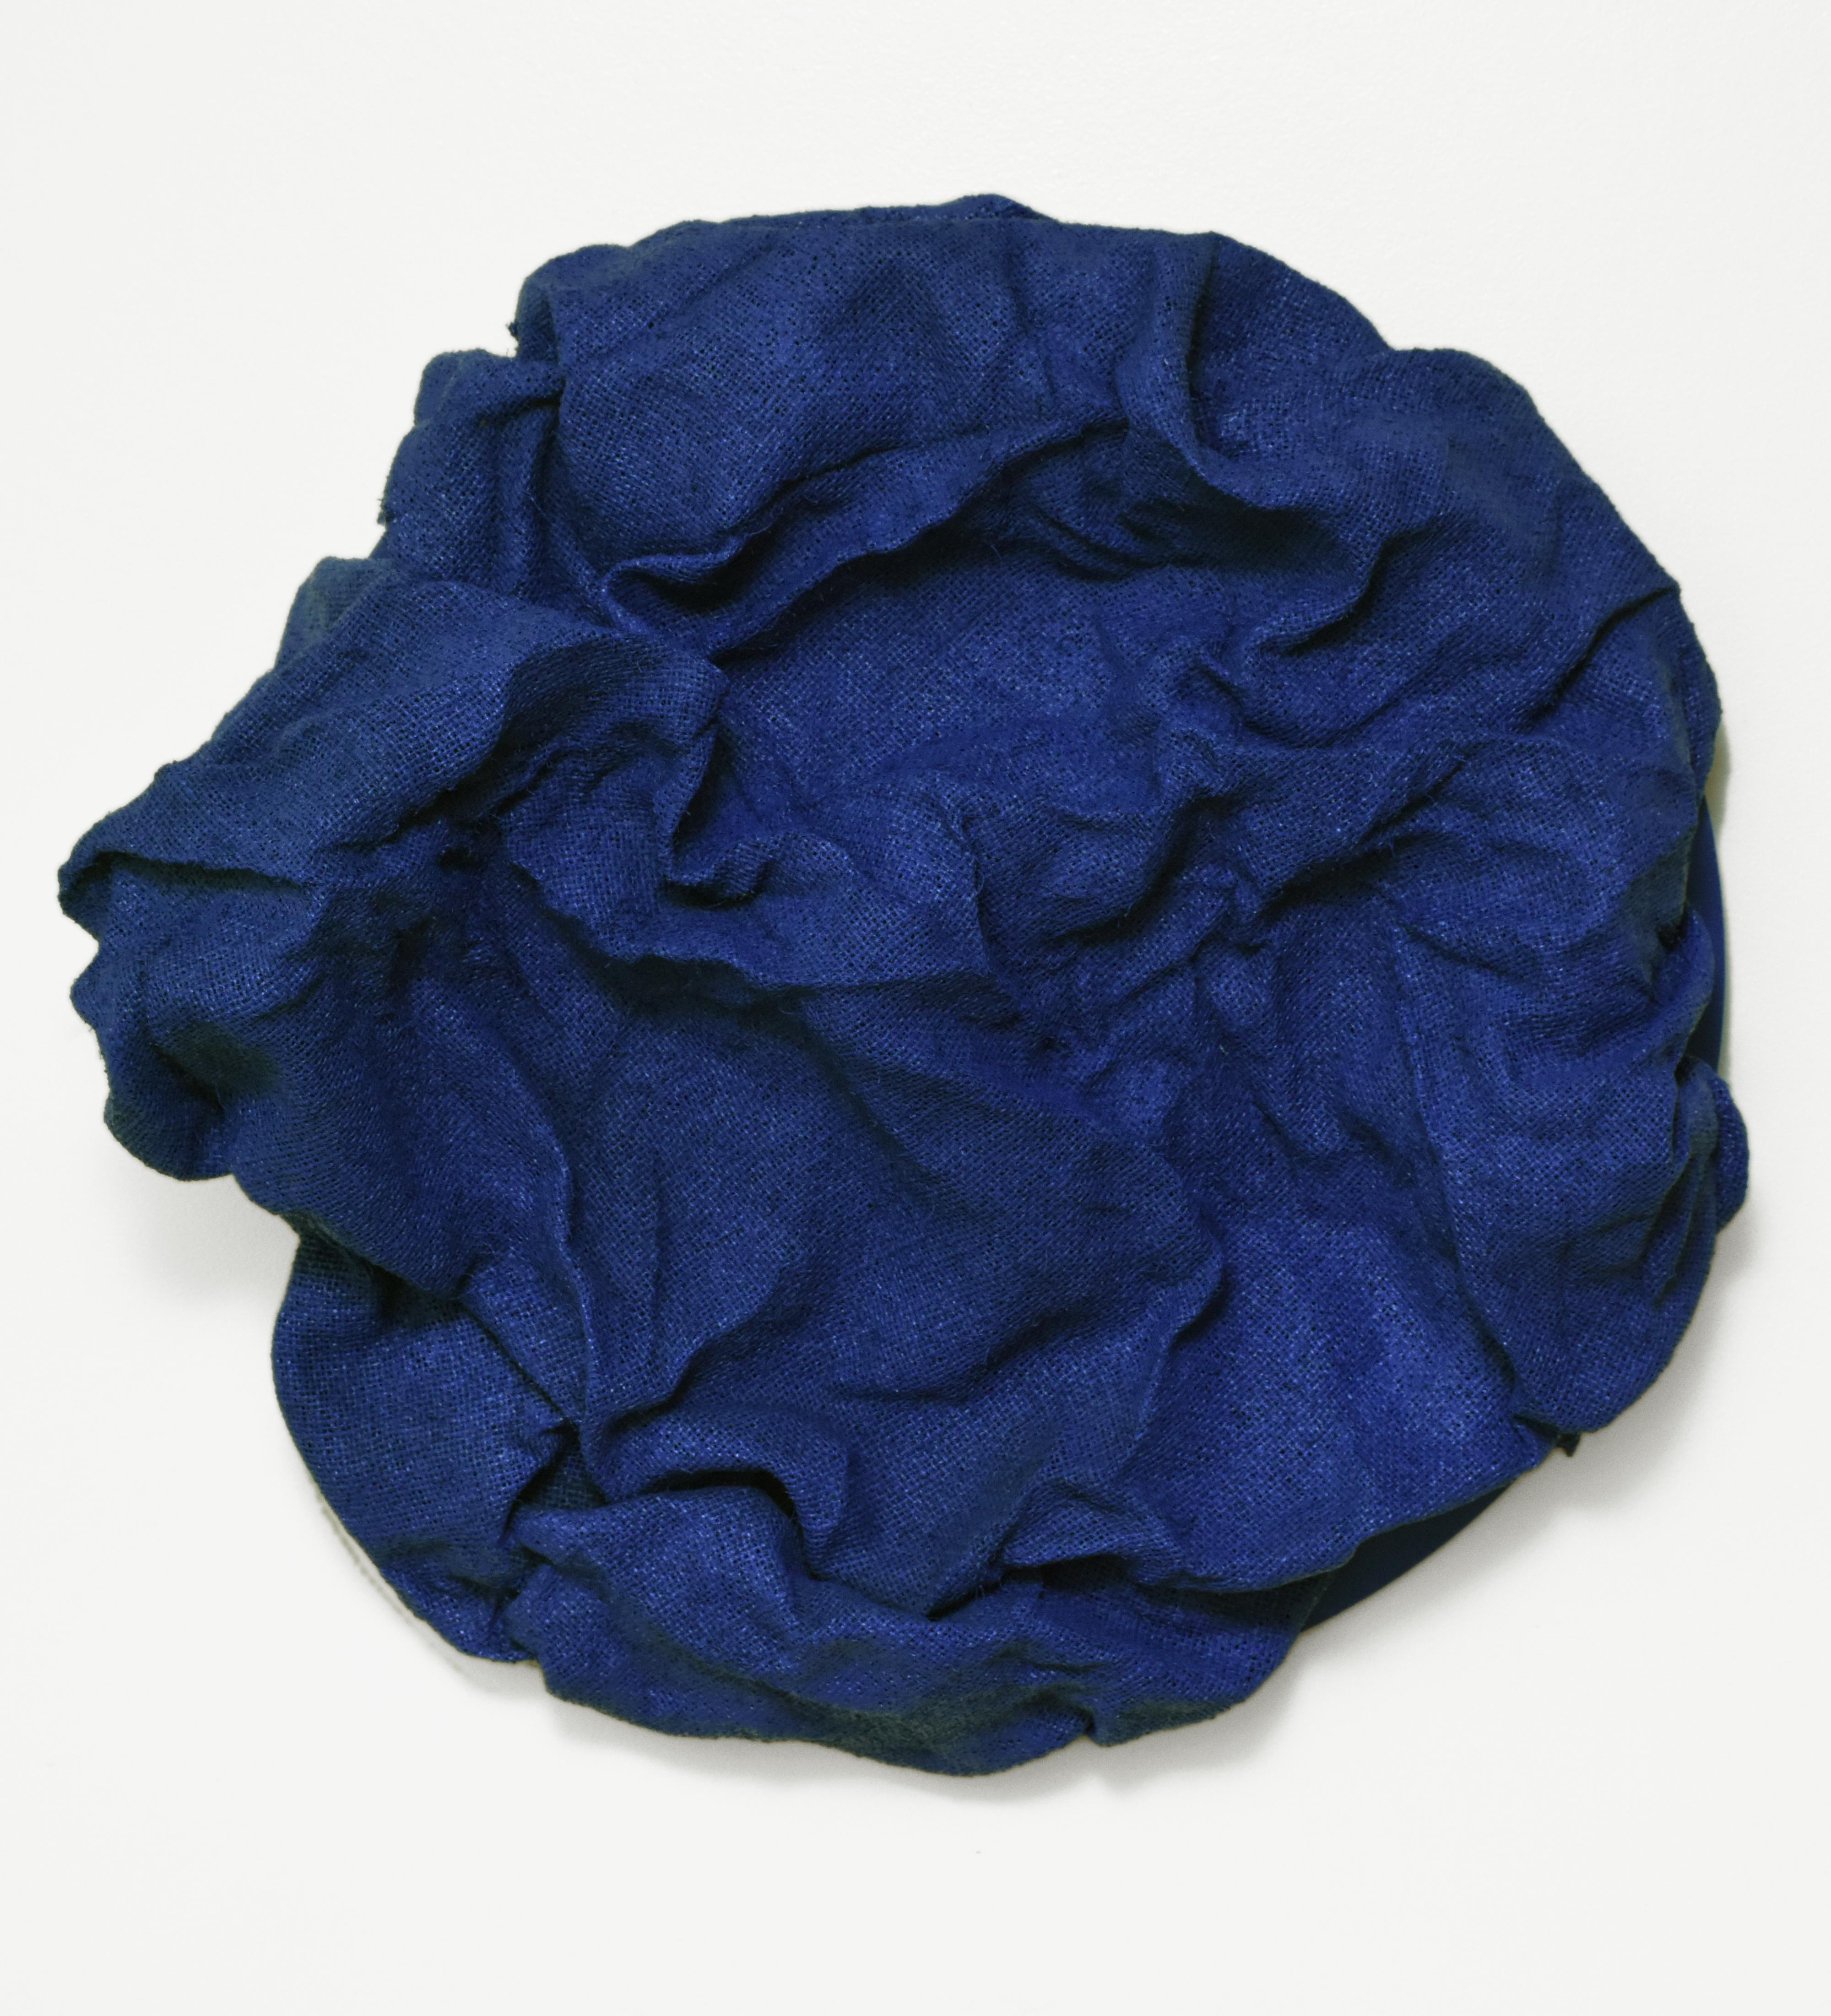 Chloe Hedden Abstract Sculpture – Fliesen in Marineblau (Marineblau, Dunkelblau, Hartstoff, zeitgenössisches Design, Textil